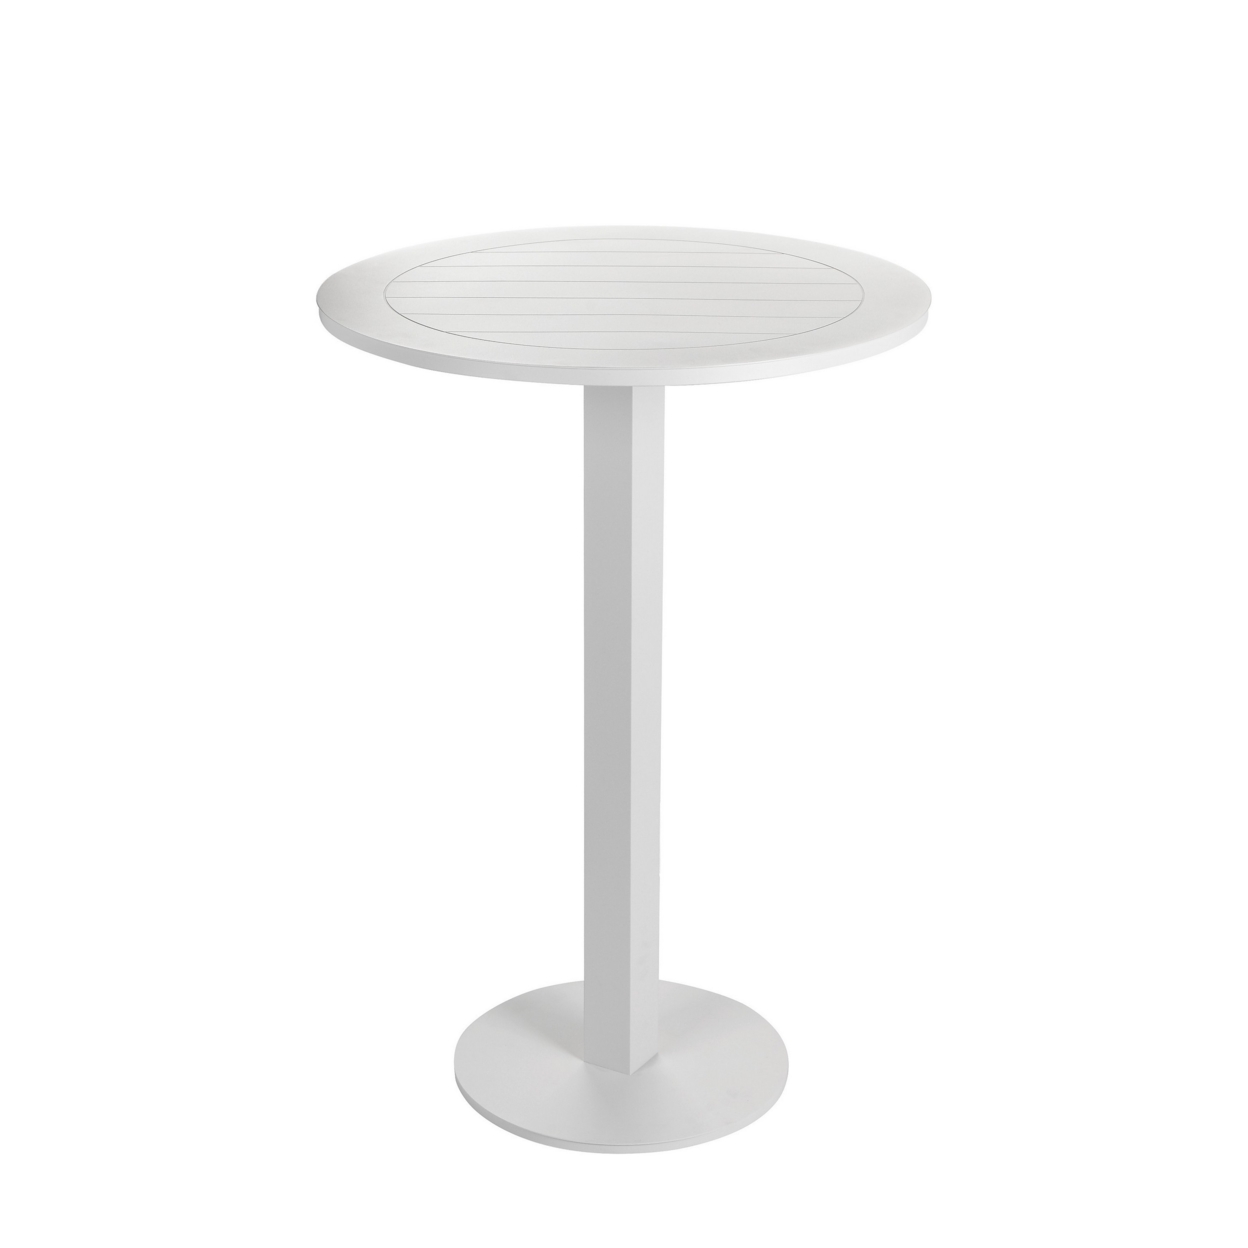 Keli 43 Inch Outdoor Bar Table, White Aluminum Frame, Foldable Design- Saltoro Sherpi